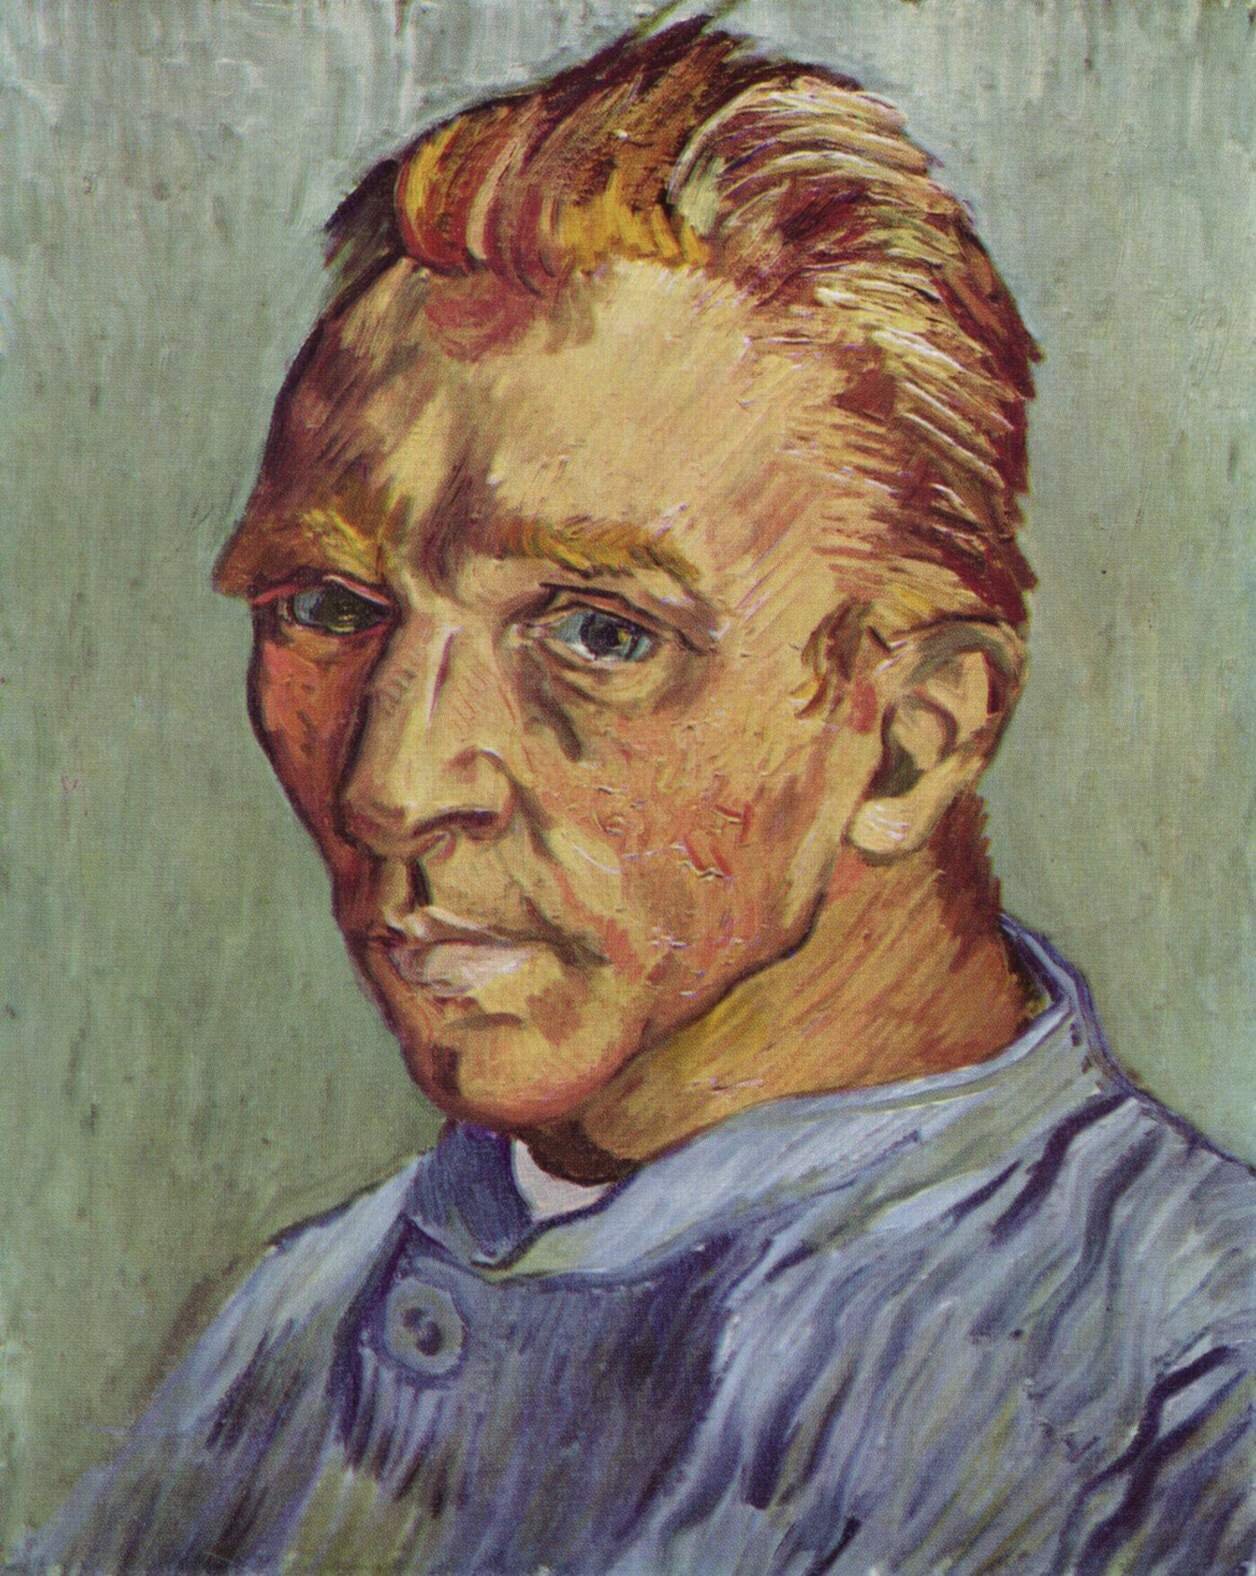 Obraz przedstawia autoportret Vincenta van Gogha. Ma krótkie, rude włosy, z grzywką zaczesaną do tyłu, rude brwi i brązowe oczy, spoglądające na odbiorcę. Nos ma duży i lekko zakrzywiony, a usta pełne. Kości jego żuchwy są mocno zarysowane. Ubrany jest w niebieską koszulę. Ujęty jest od ramion w górę. Ciało skierowane jest w lewą stronę obrazu, a głowa odwrócona w stronę odbiorcy. Tło jest jasnozielone, zamazane.